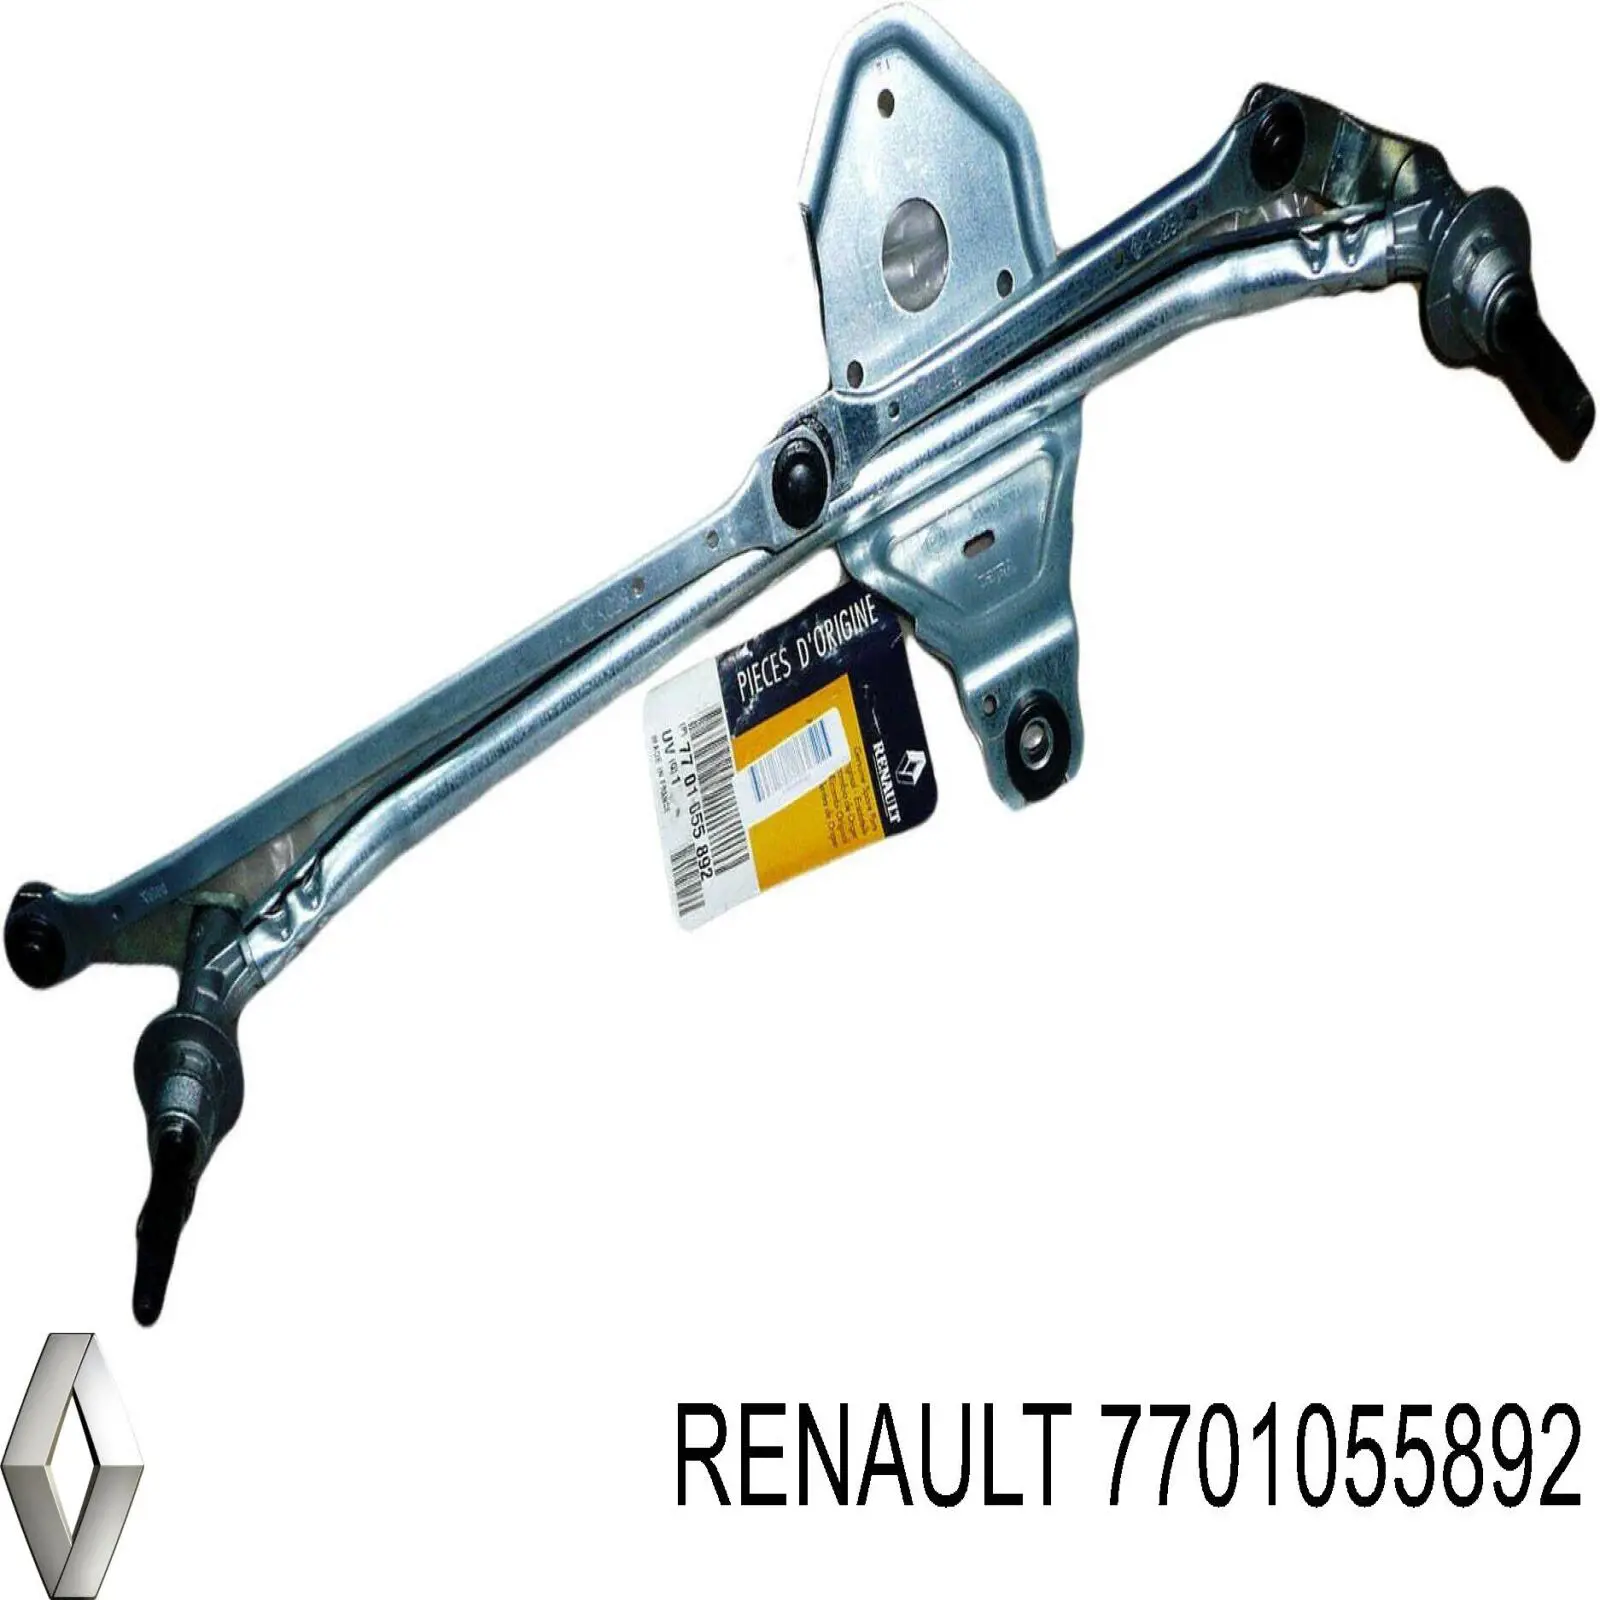 7701055892 Renault (RVI) trapézio de limpador pára-brisas